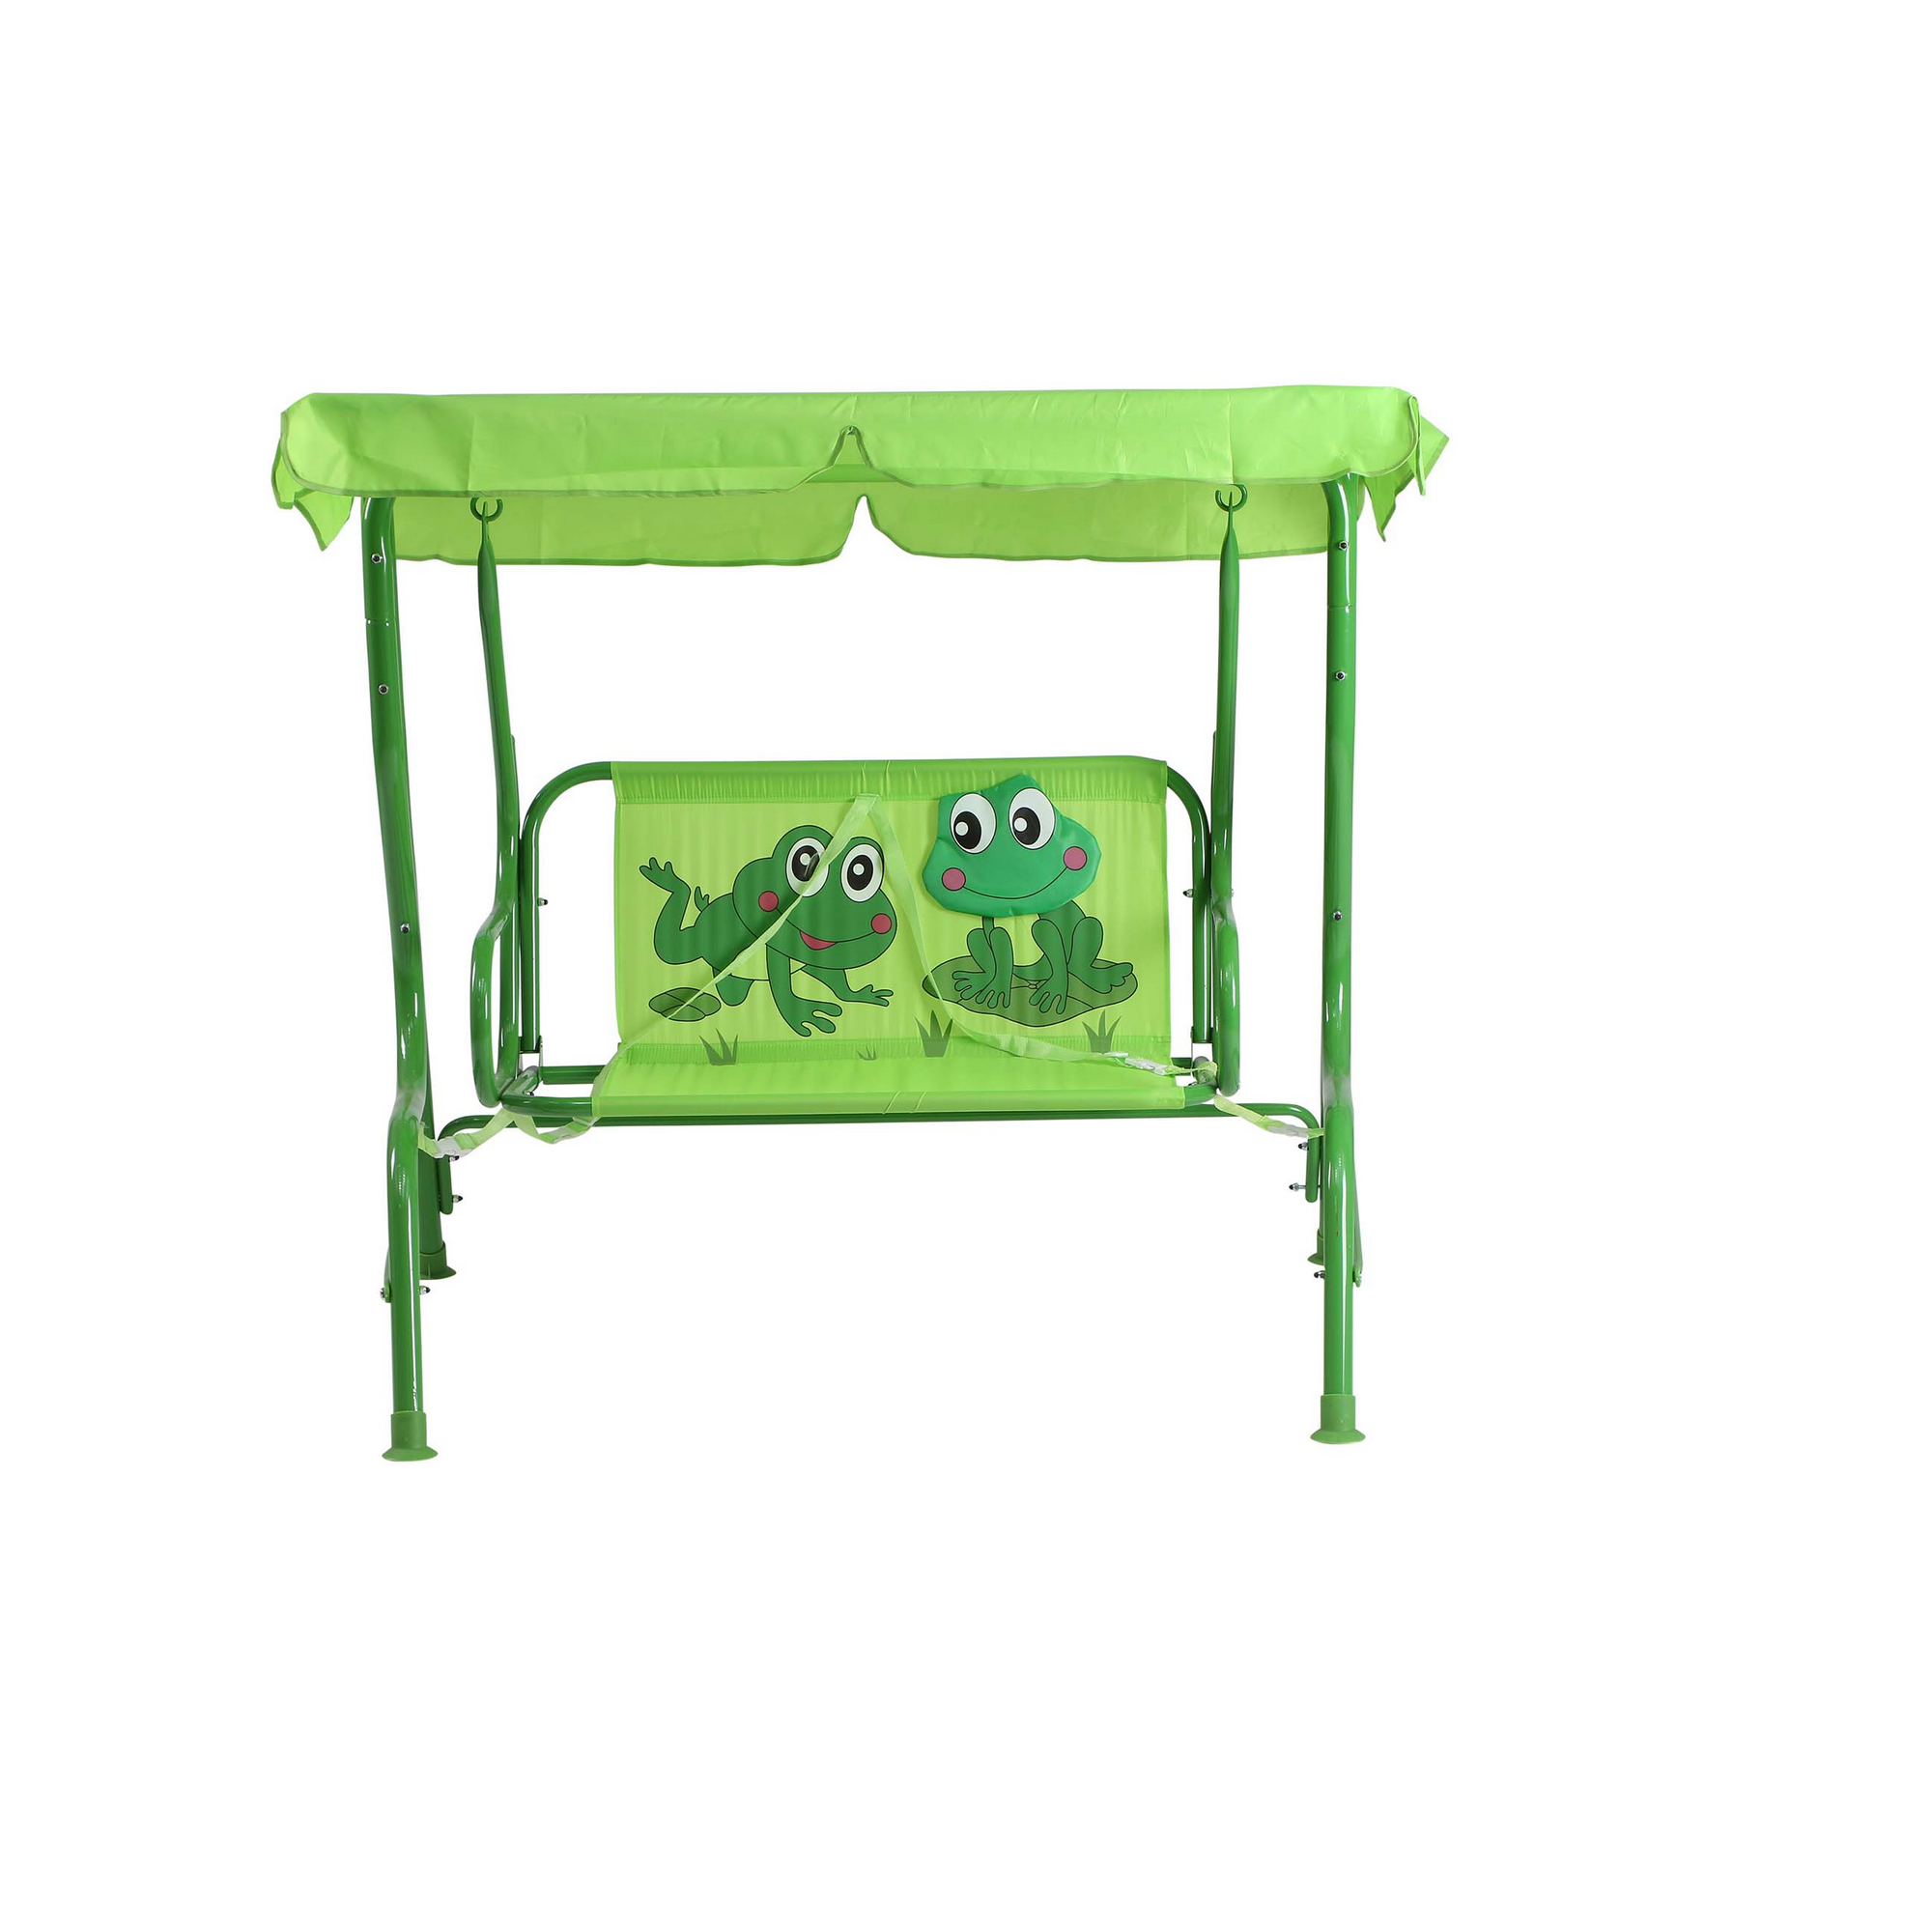 Kinderschaukel 'Froggy' grün 75 x 115 x 118 cm + product picture